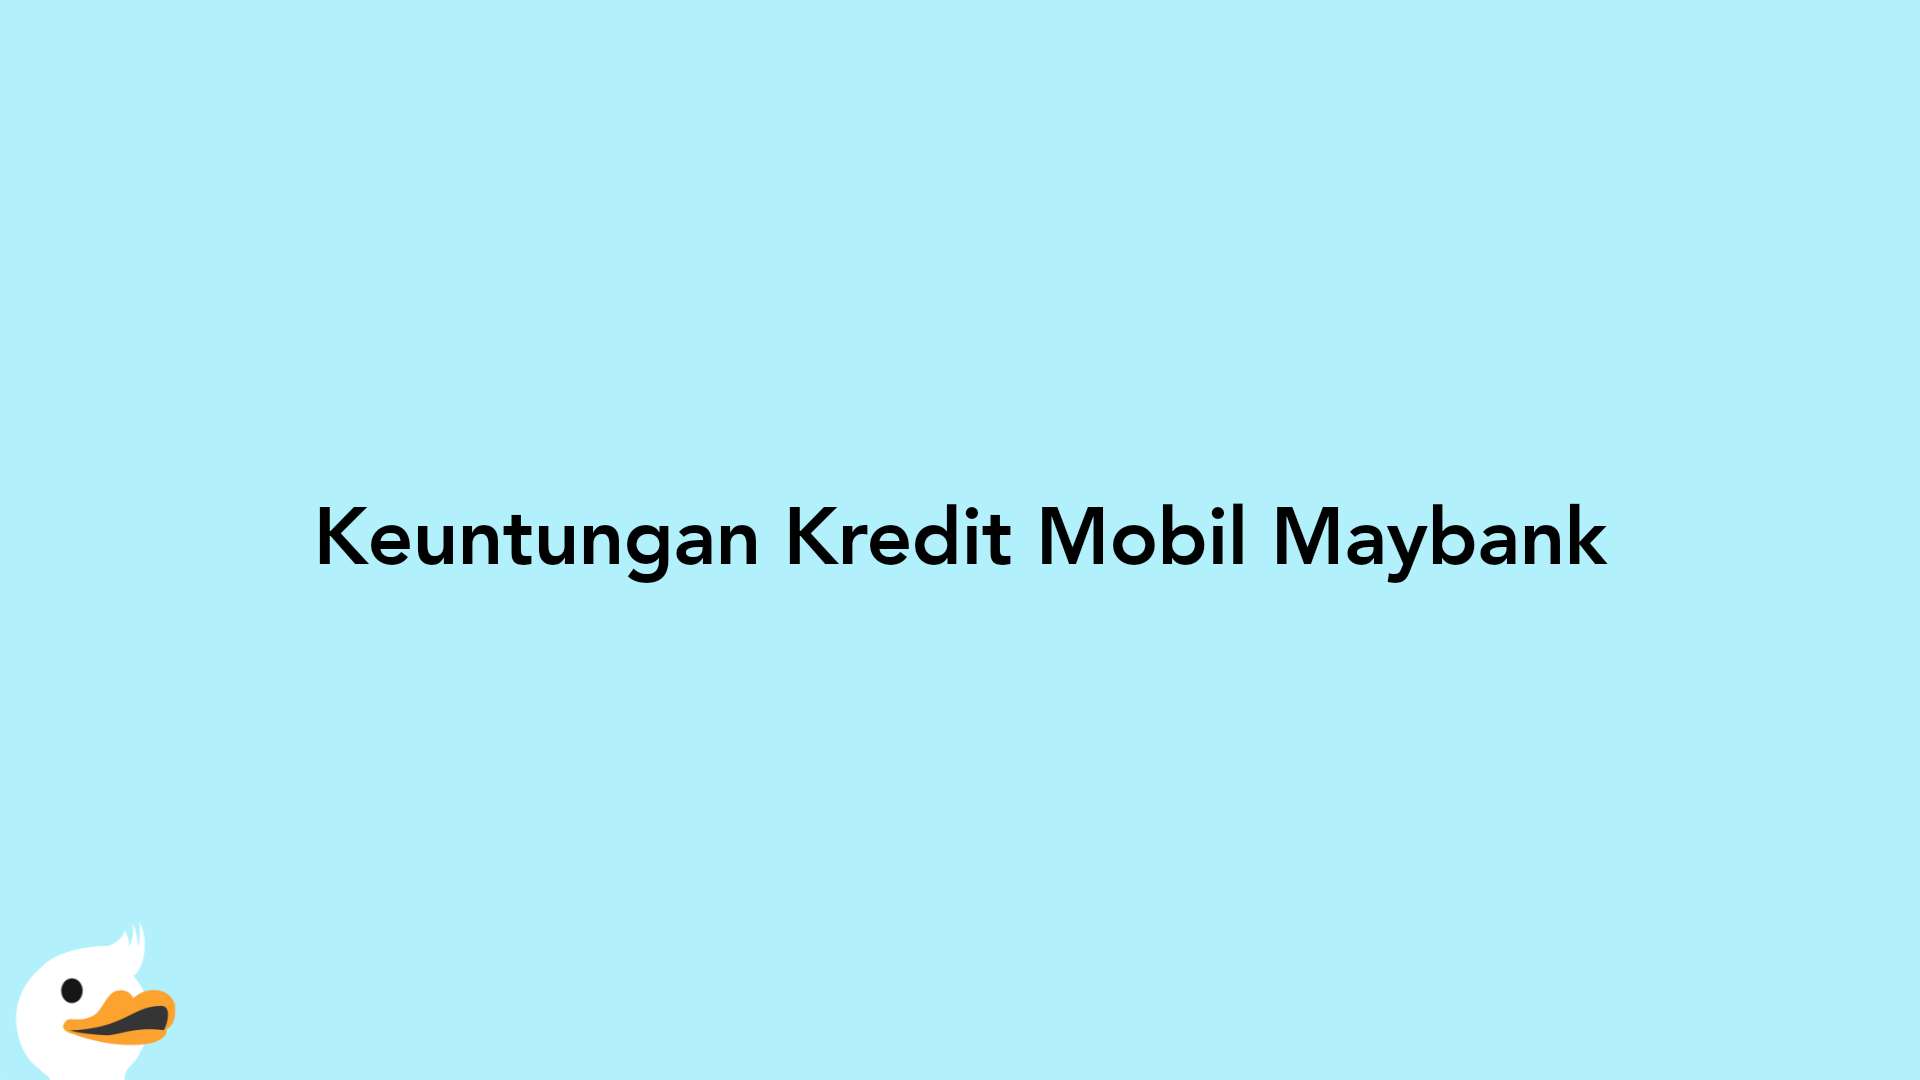 Keuntungan Kredit Mobil Maybank